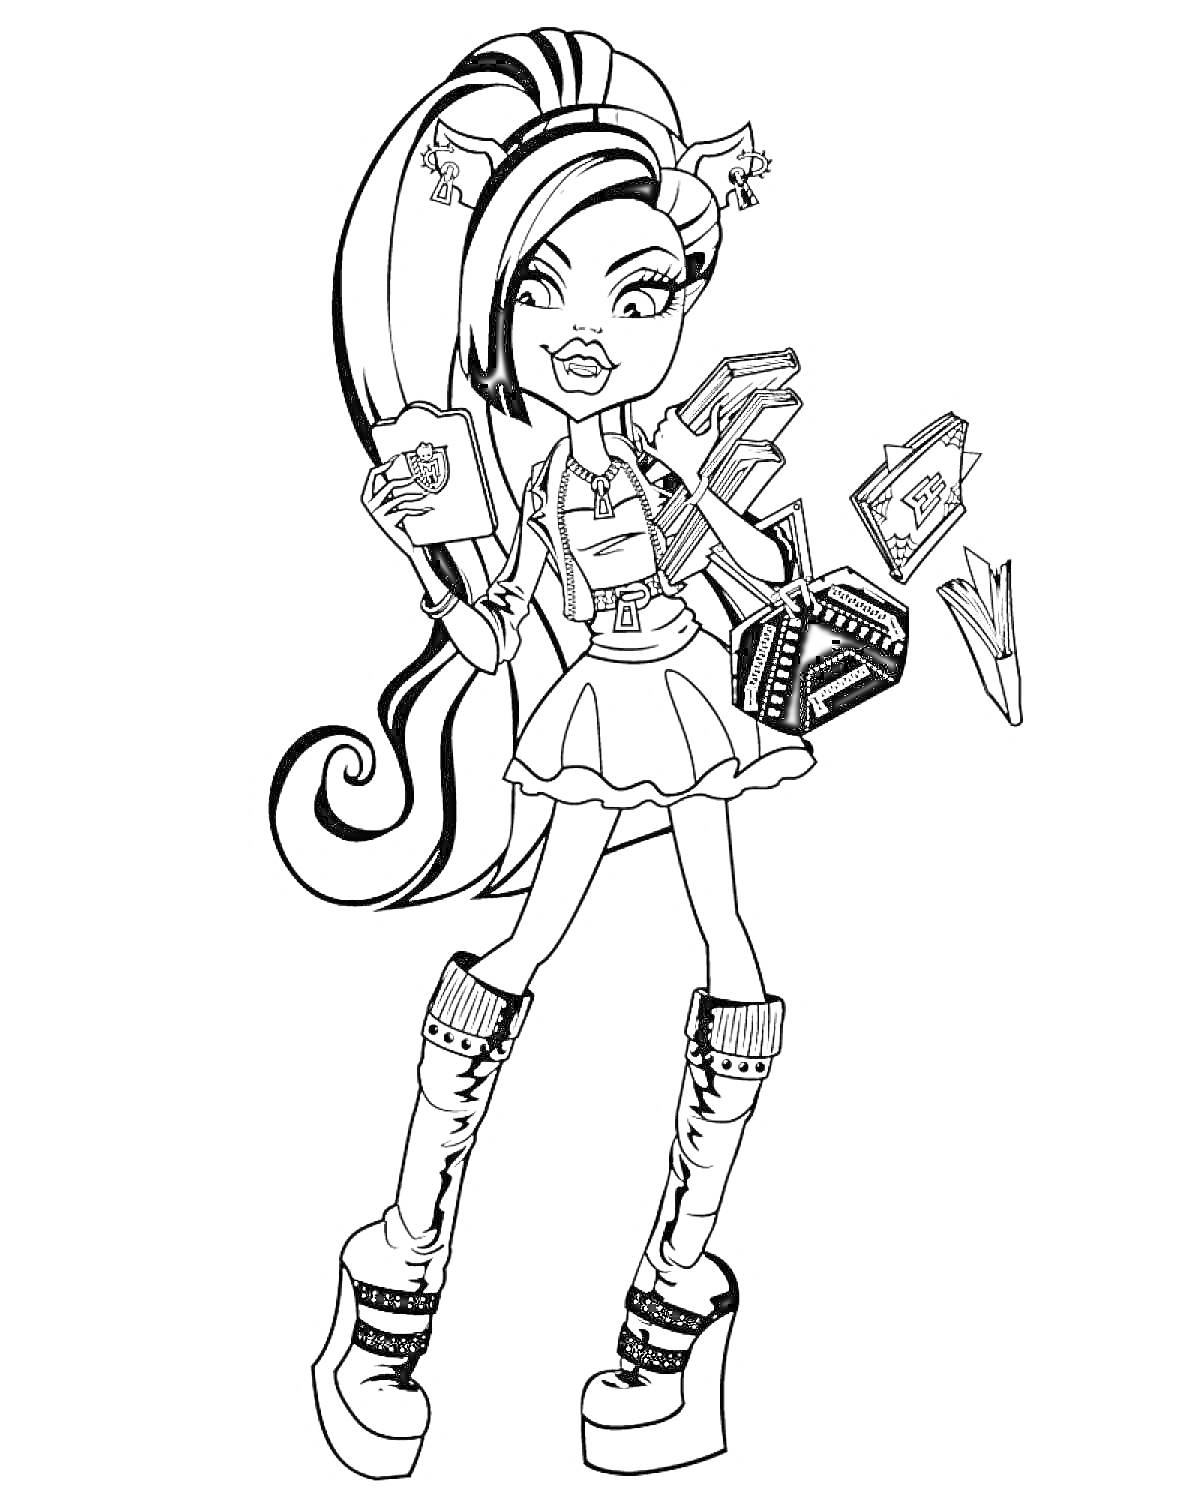 Раскраска Девушка Монстр Хай с длинными волосами, ушками, пакетиками и коробкой в руках